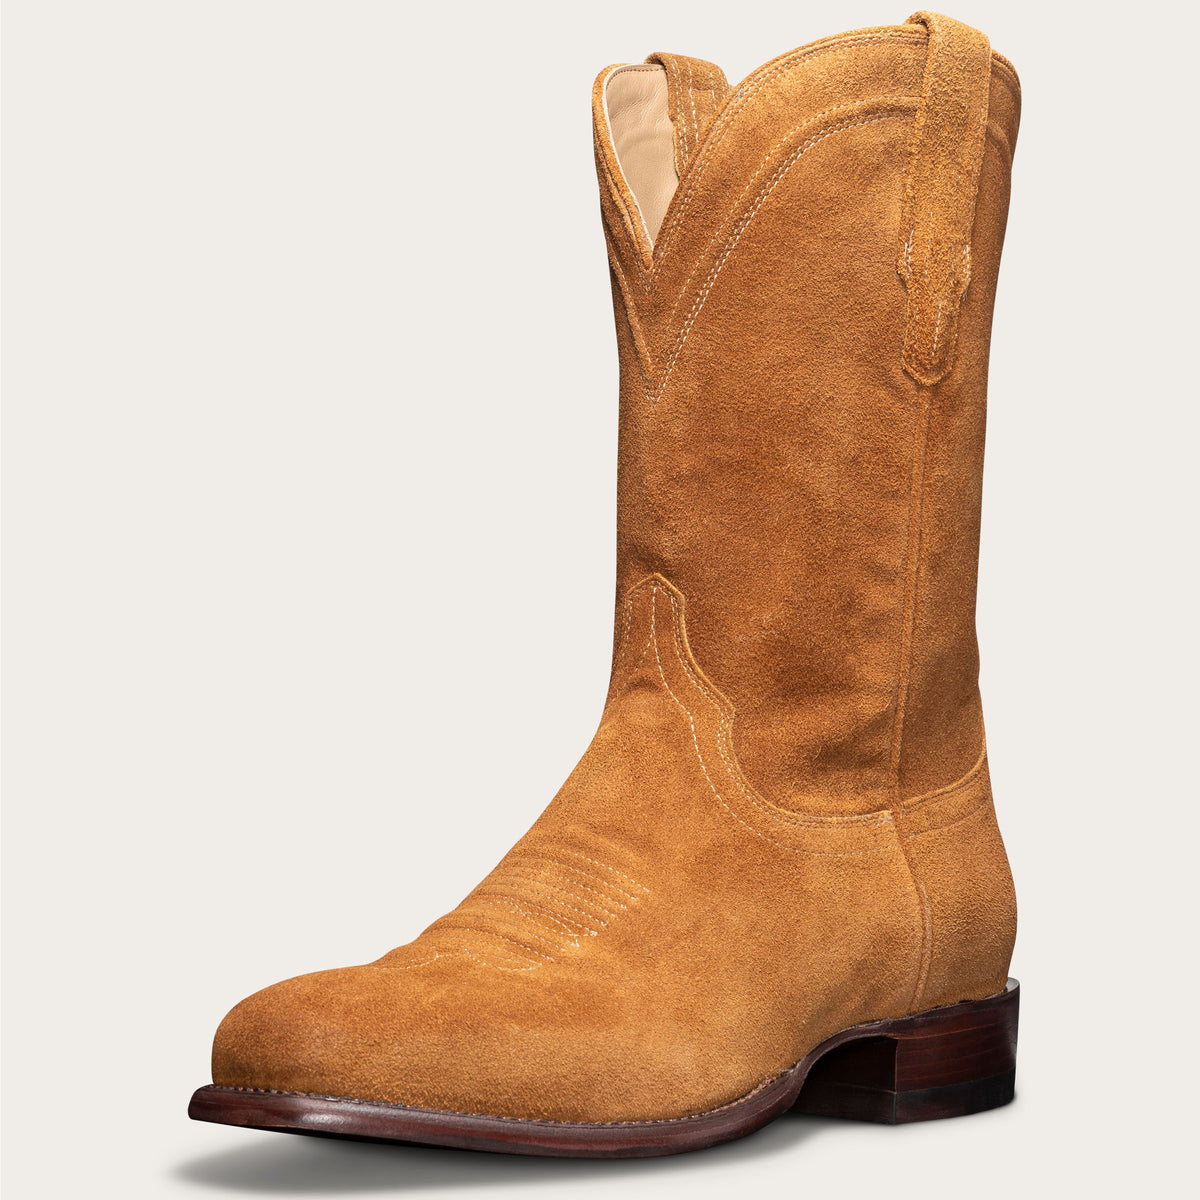 Men's Square Toe Cowboy Boots - Suede 